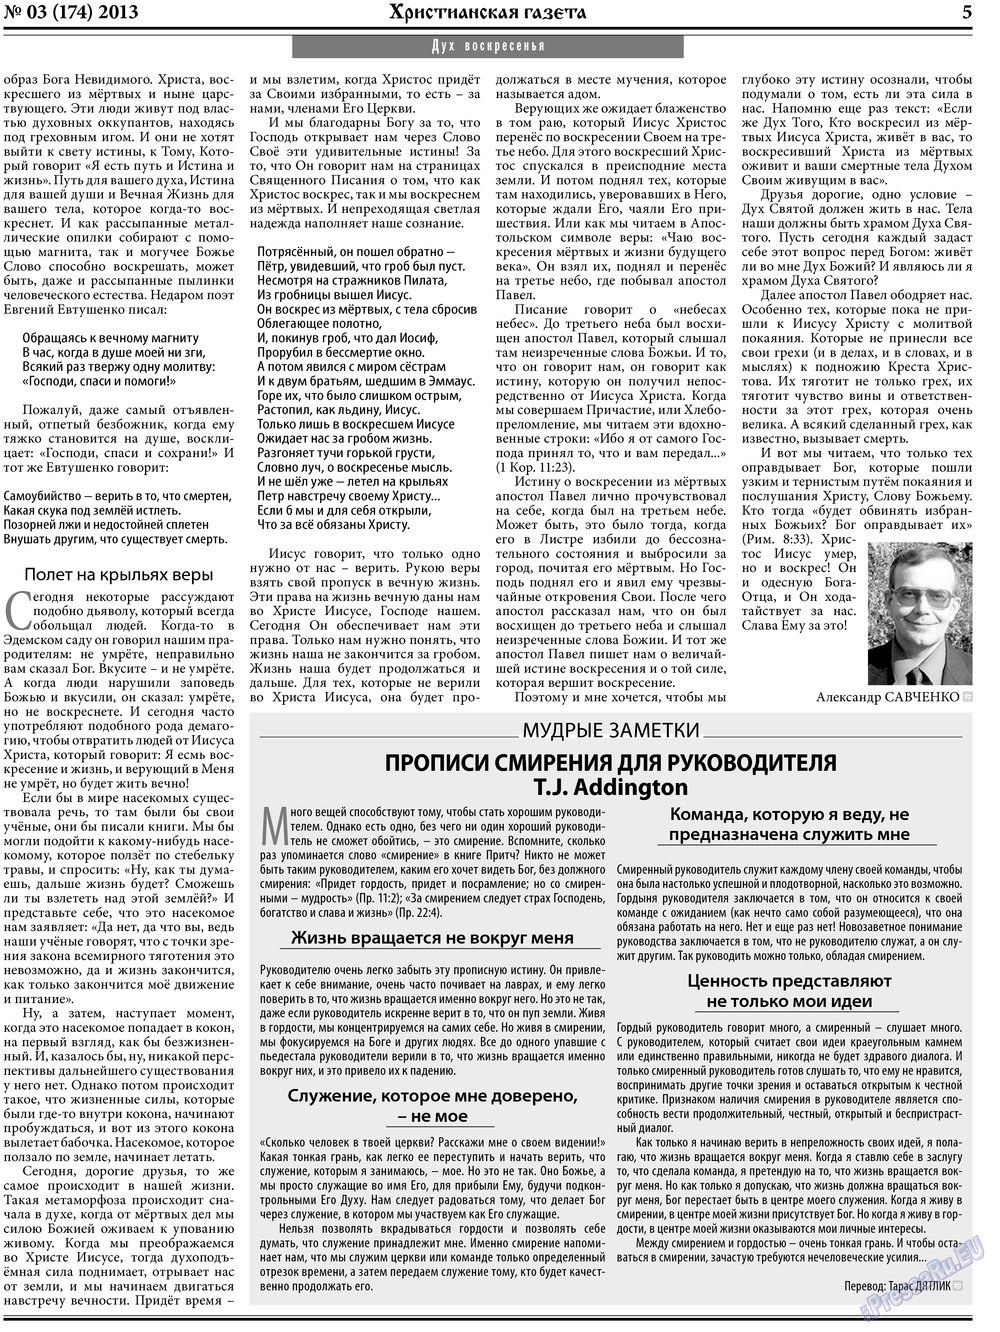 Христианская газета (газета). 2013 год, номер 3, стр. 5